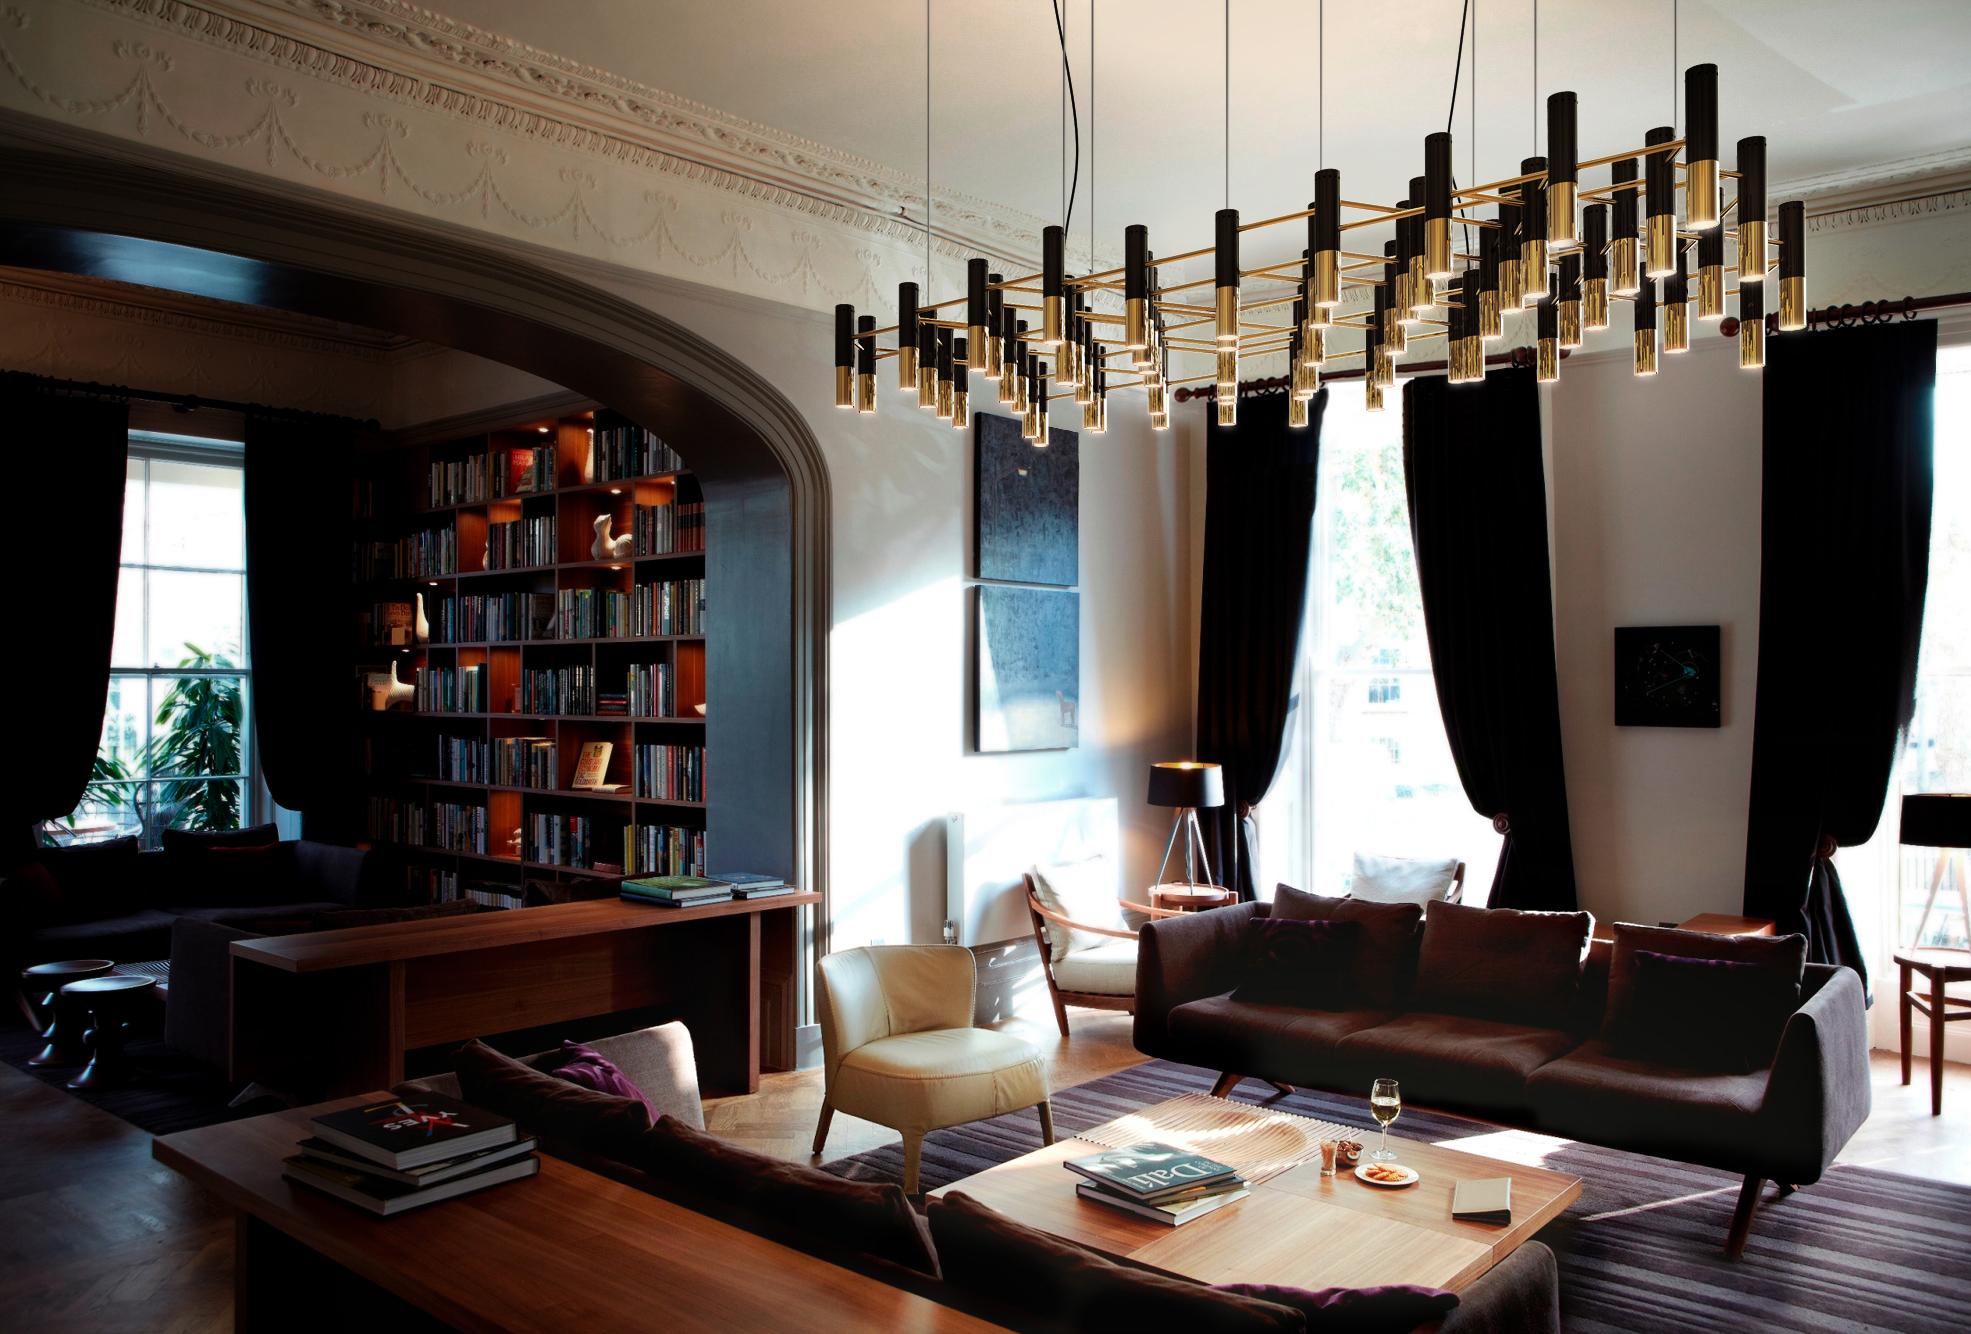 Goldene Hängeleuchte im Wohnzimmer #couchtisch #sessel #sofa #schwarzehängeleuchte ©Delightfull